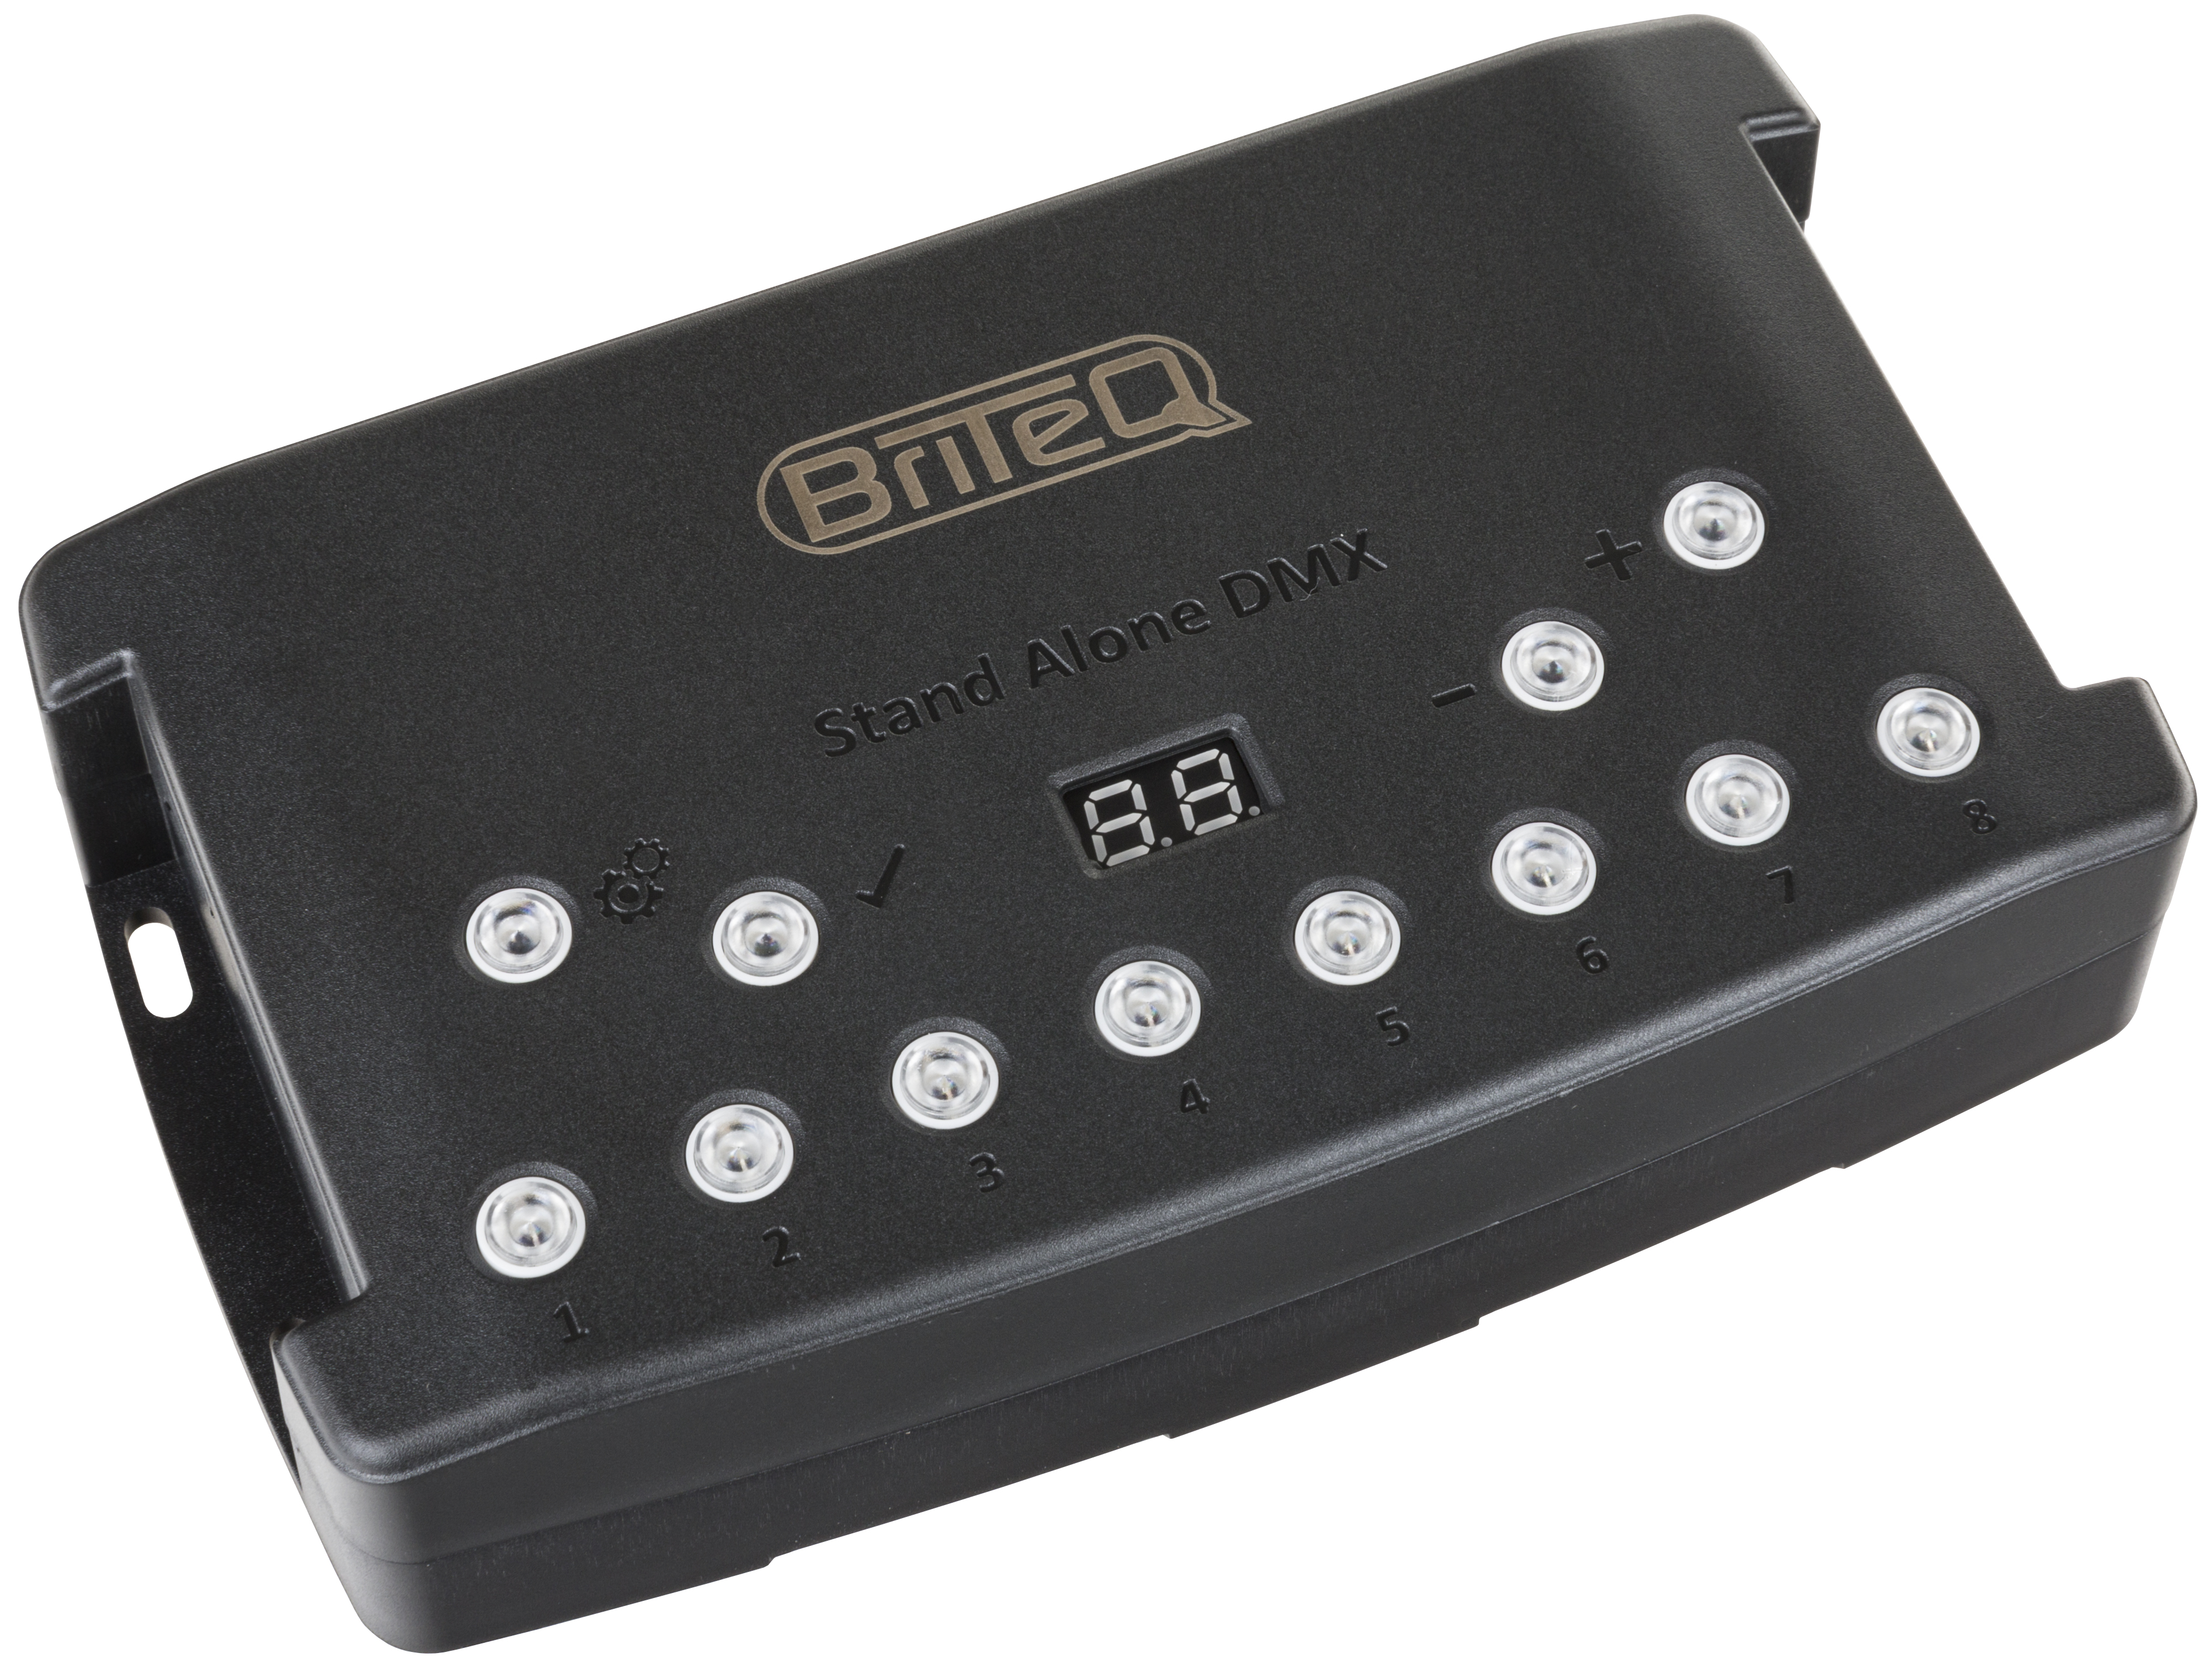 Briteq de 512box LD512 canaux DMX interface avec chromateq logiciels et télécommande infrarouge 